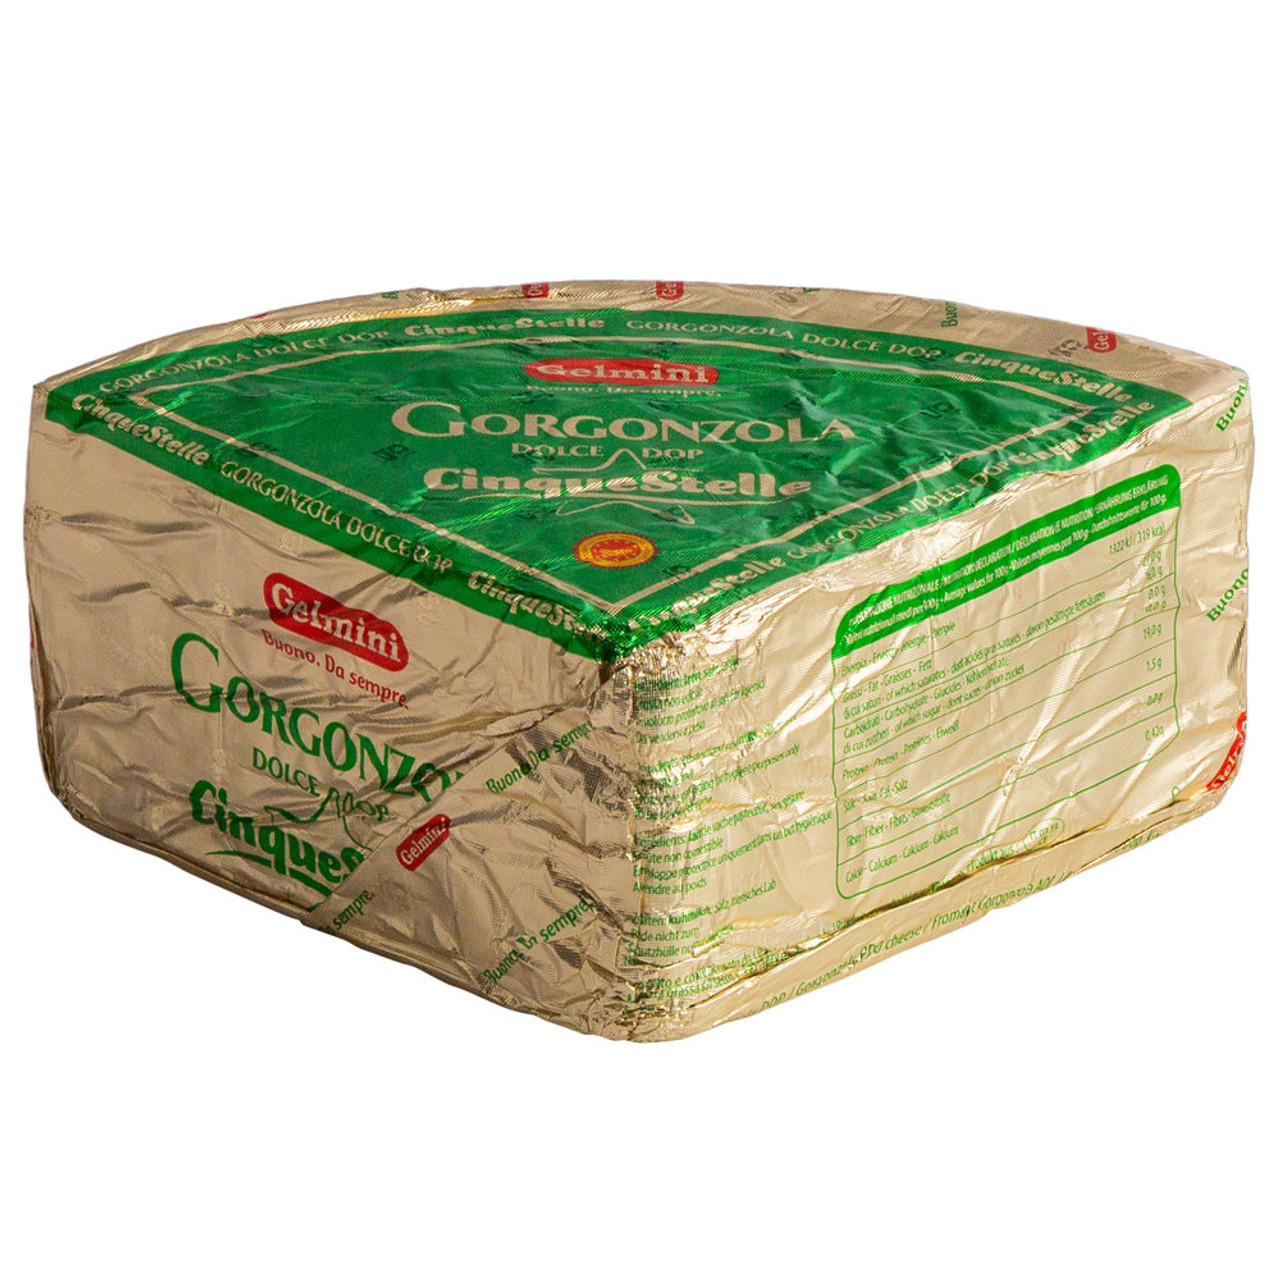 Gorgonzola Dolce D.O.P. – per 1/2 lb (8 oz) – Caputo's Market & Deli